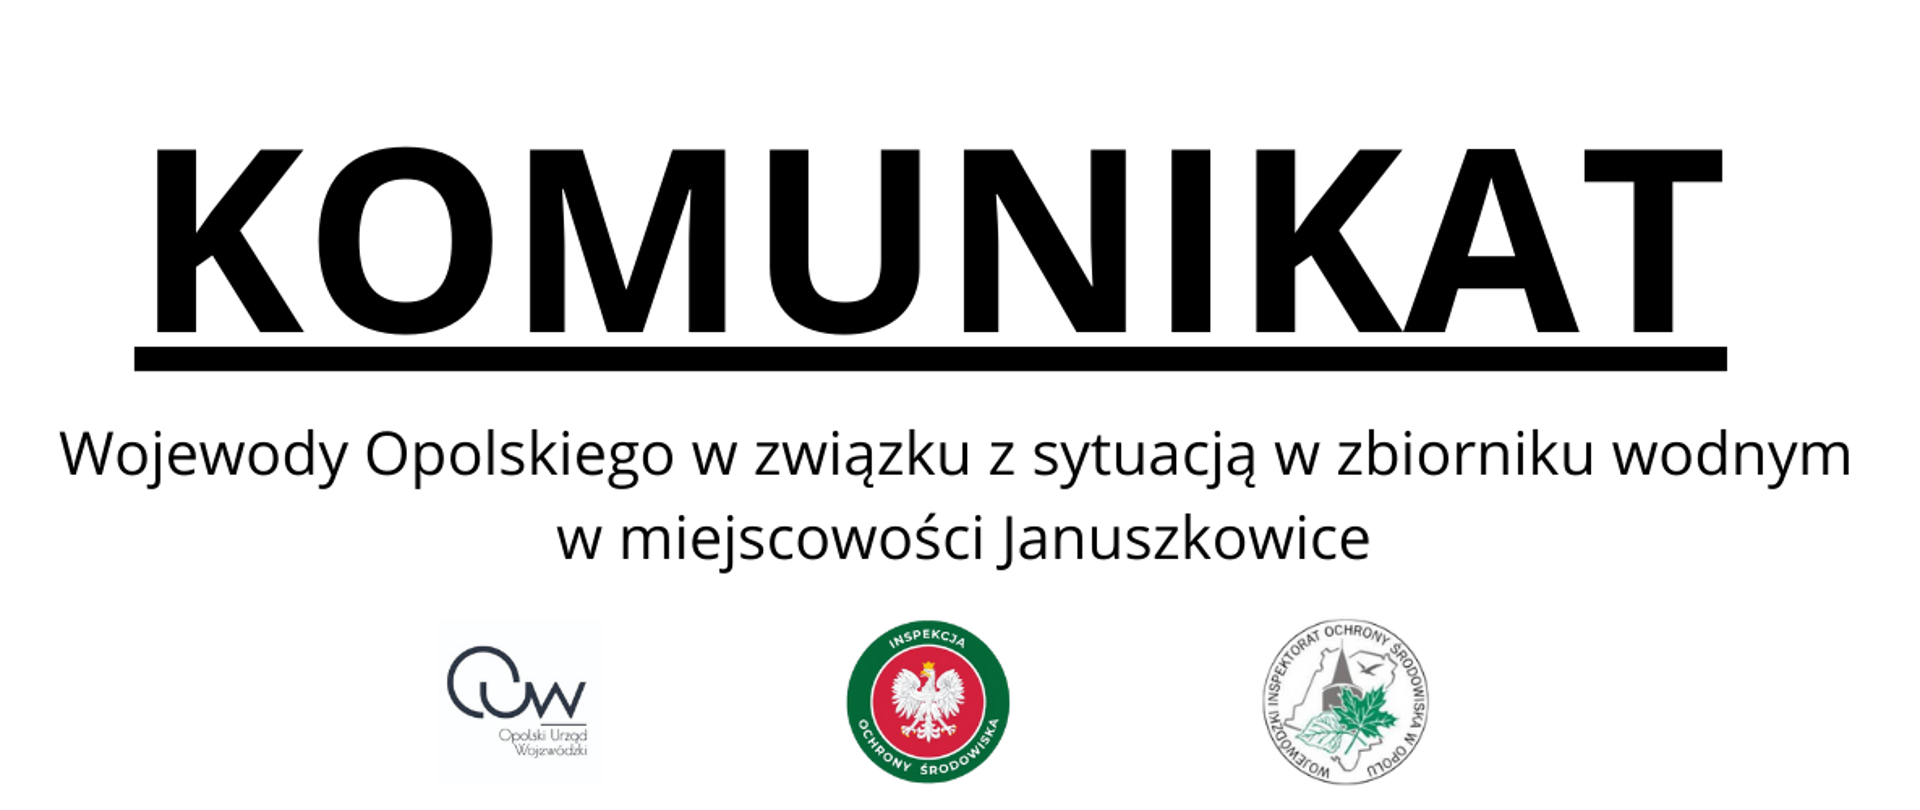 Komunikat Wojewody Opolskiego w związku z sytuacją w zbiorniku wodnym w miejscowości Januszkowice